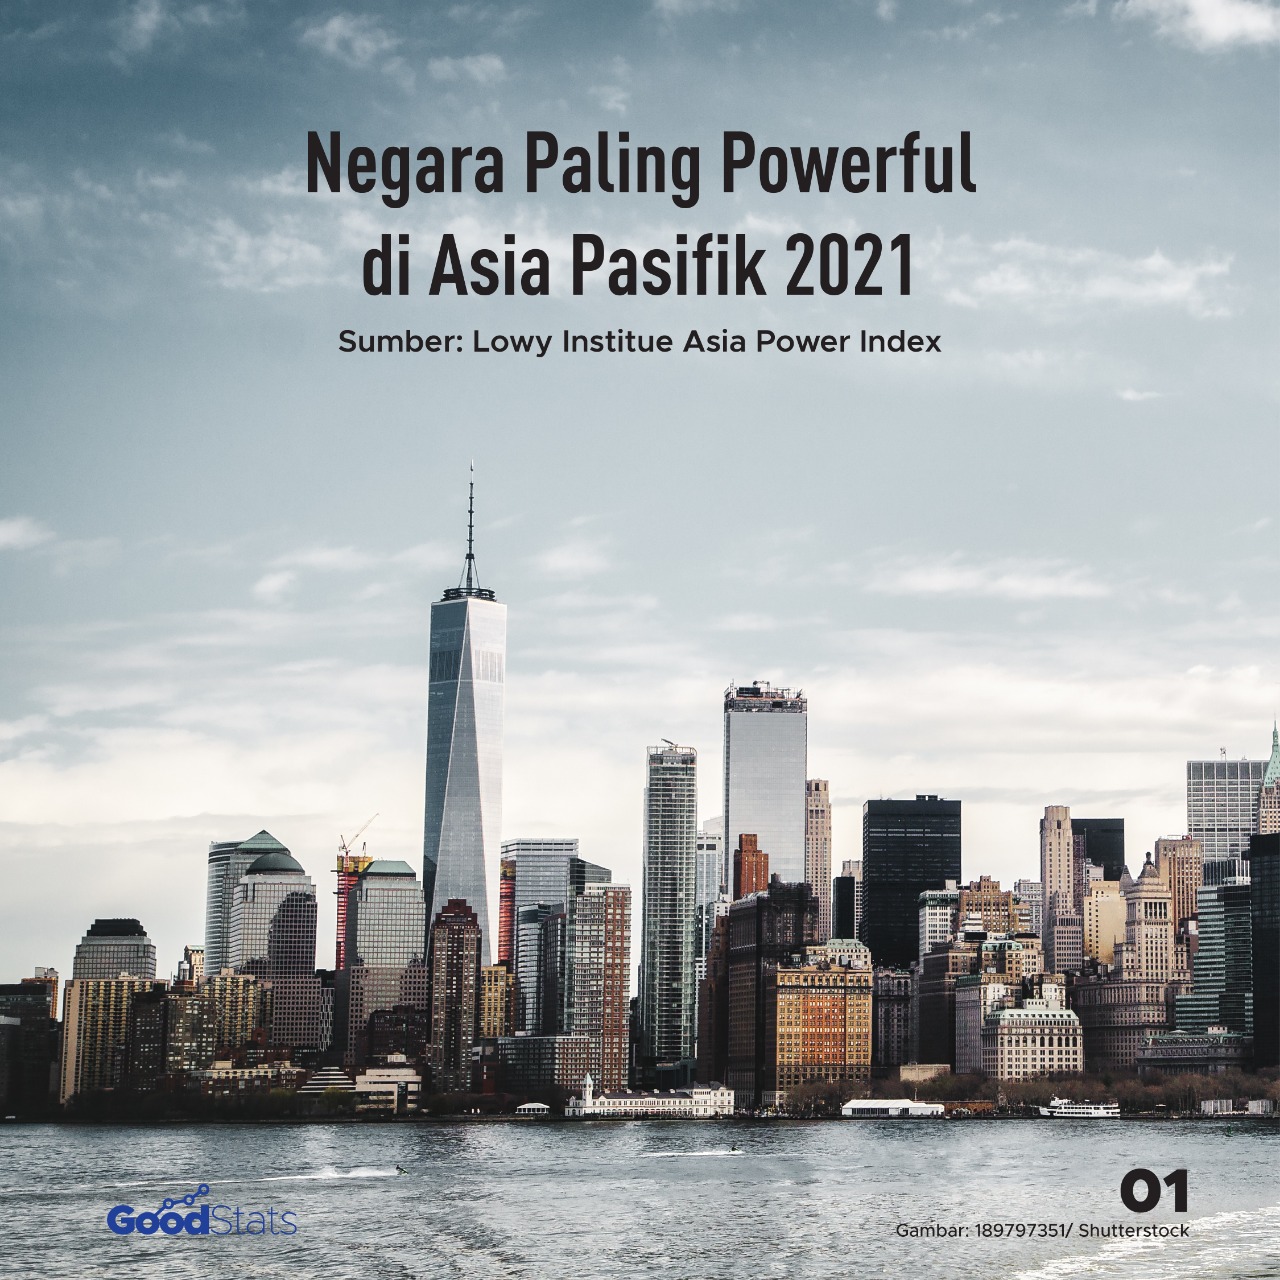 Daftar Negara Paling "Powerful" di Asia Pasifik 2022